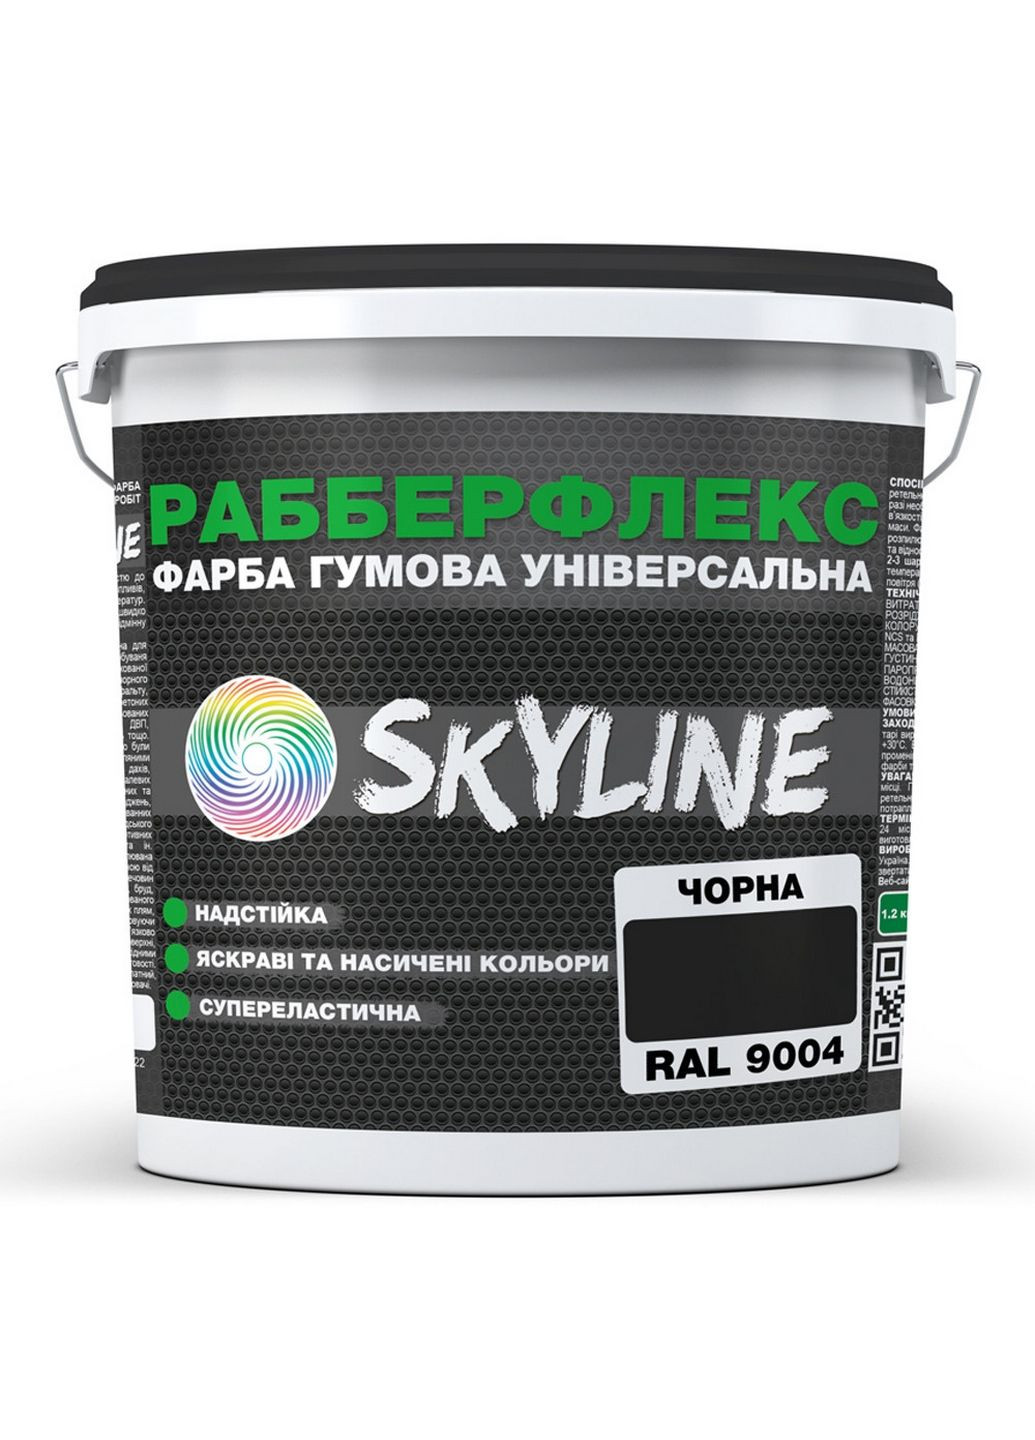 Краска резиновая суперэластичная сверхстойкая «РабберФлекс» 12 кг SkyLine (289463405)